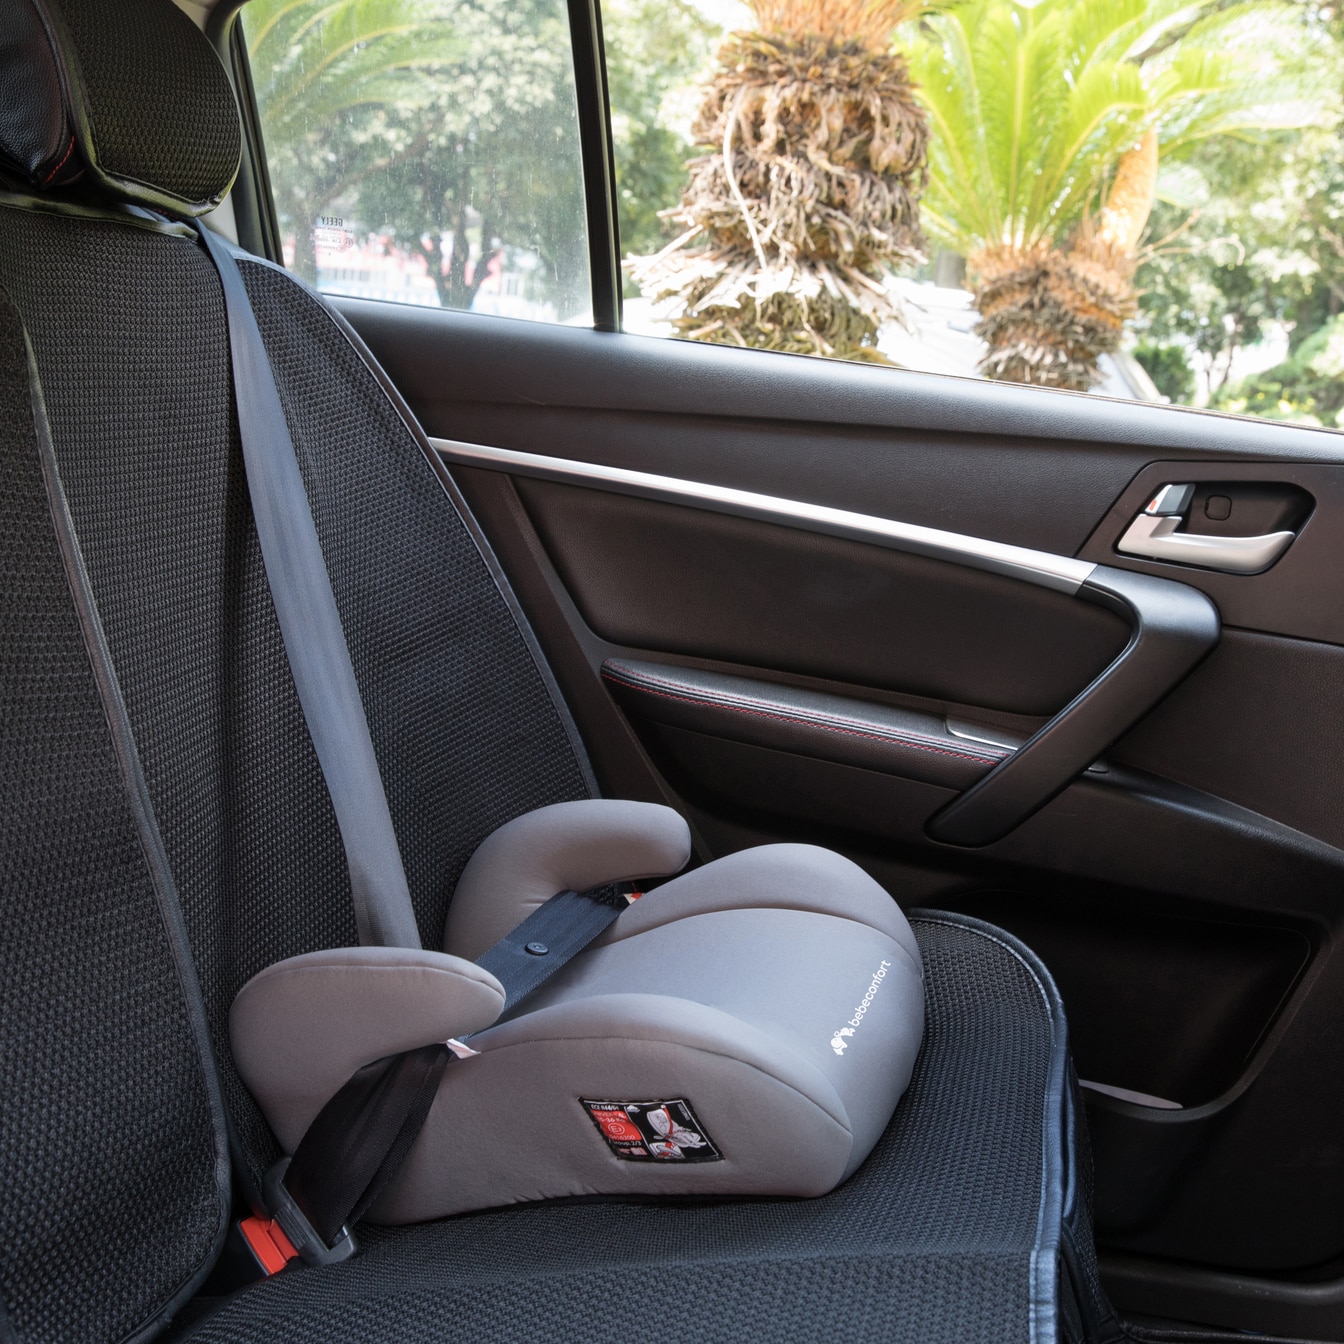 Bebeconfort siège auto RoadFix, Groupe 2/3 (de 3 à 12 ans environ),  ajustable en hauteur, Pixel Grey - Blanc Gris - Kiabi - 79.99€